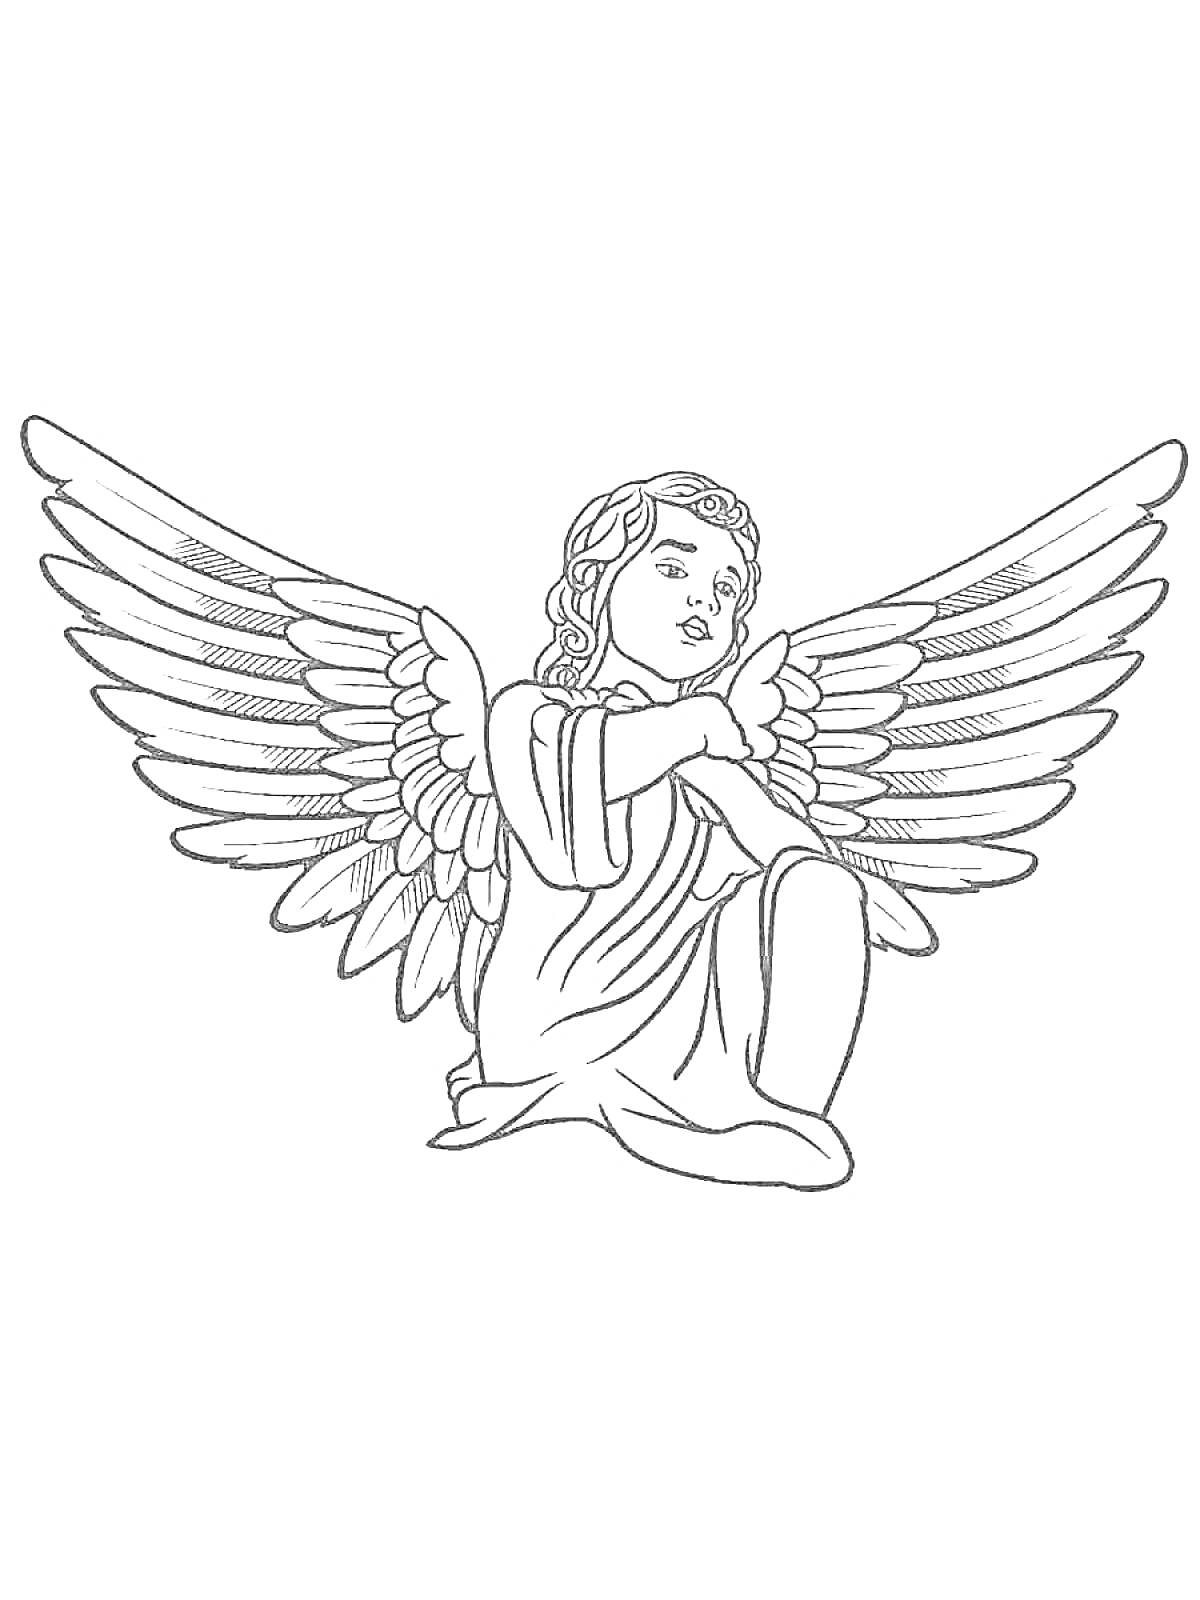 Раскраска Ангел с большими крыльями, сидящий на коленях